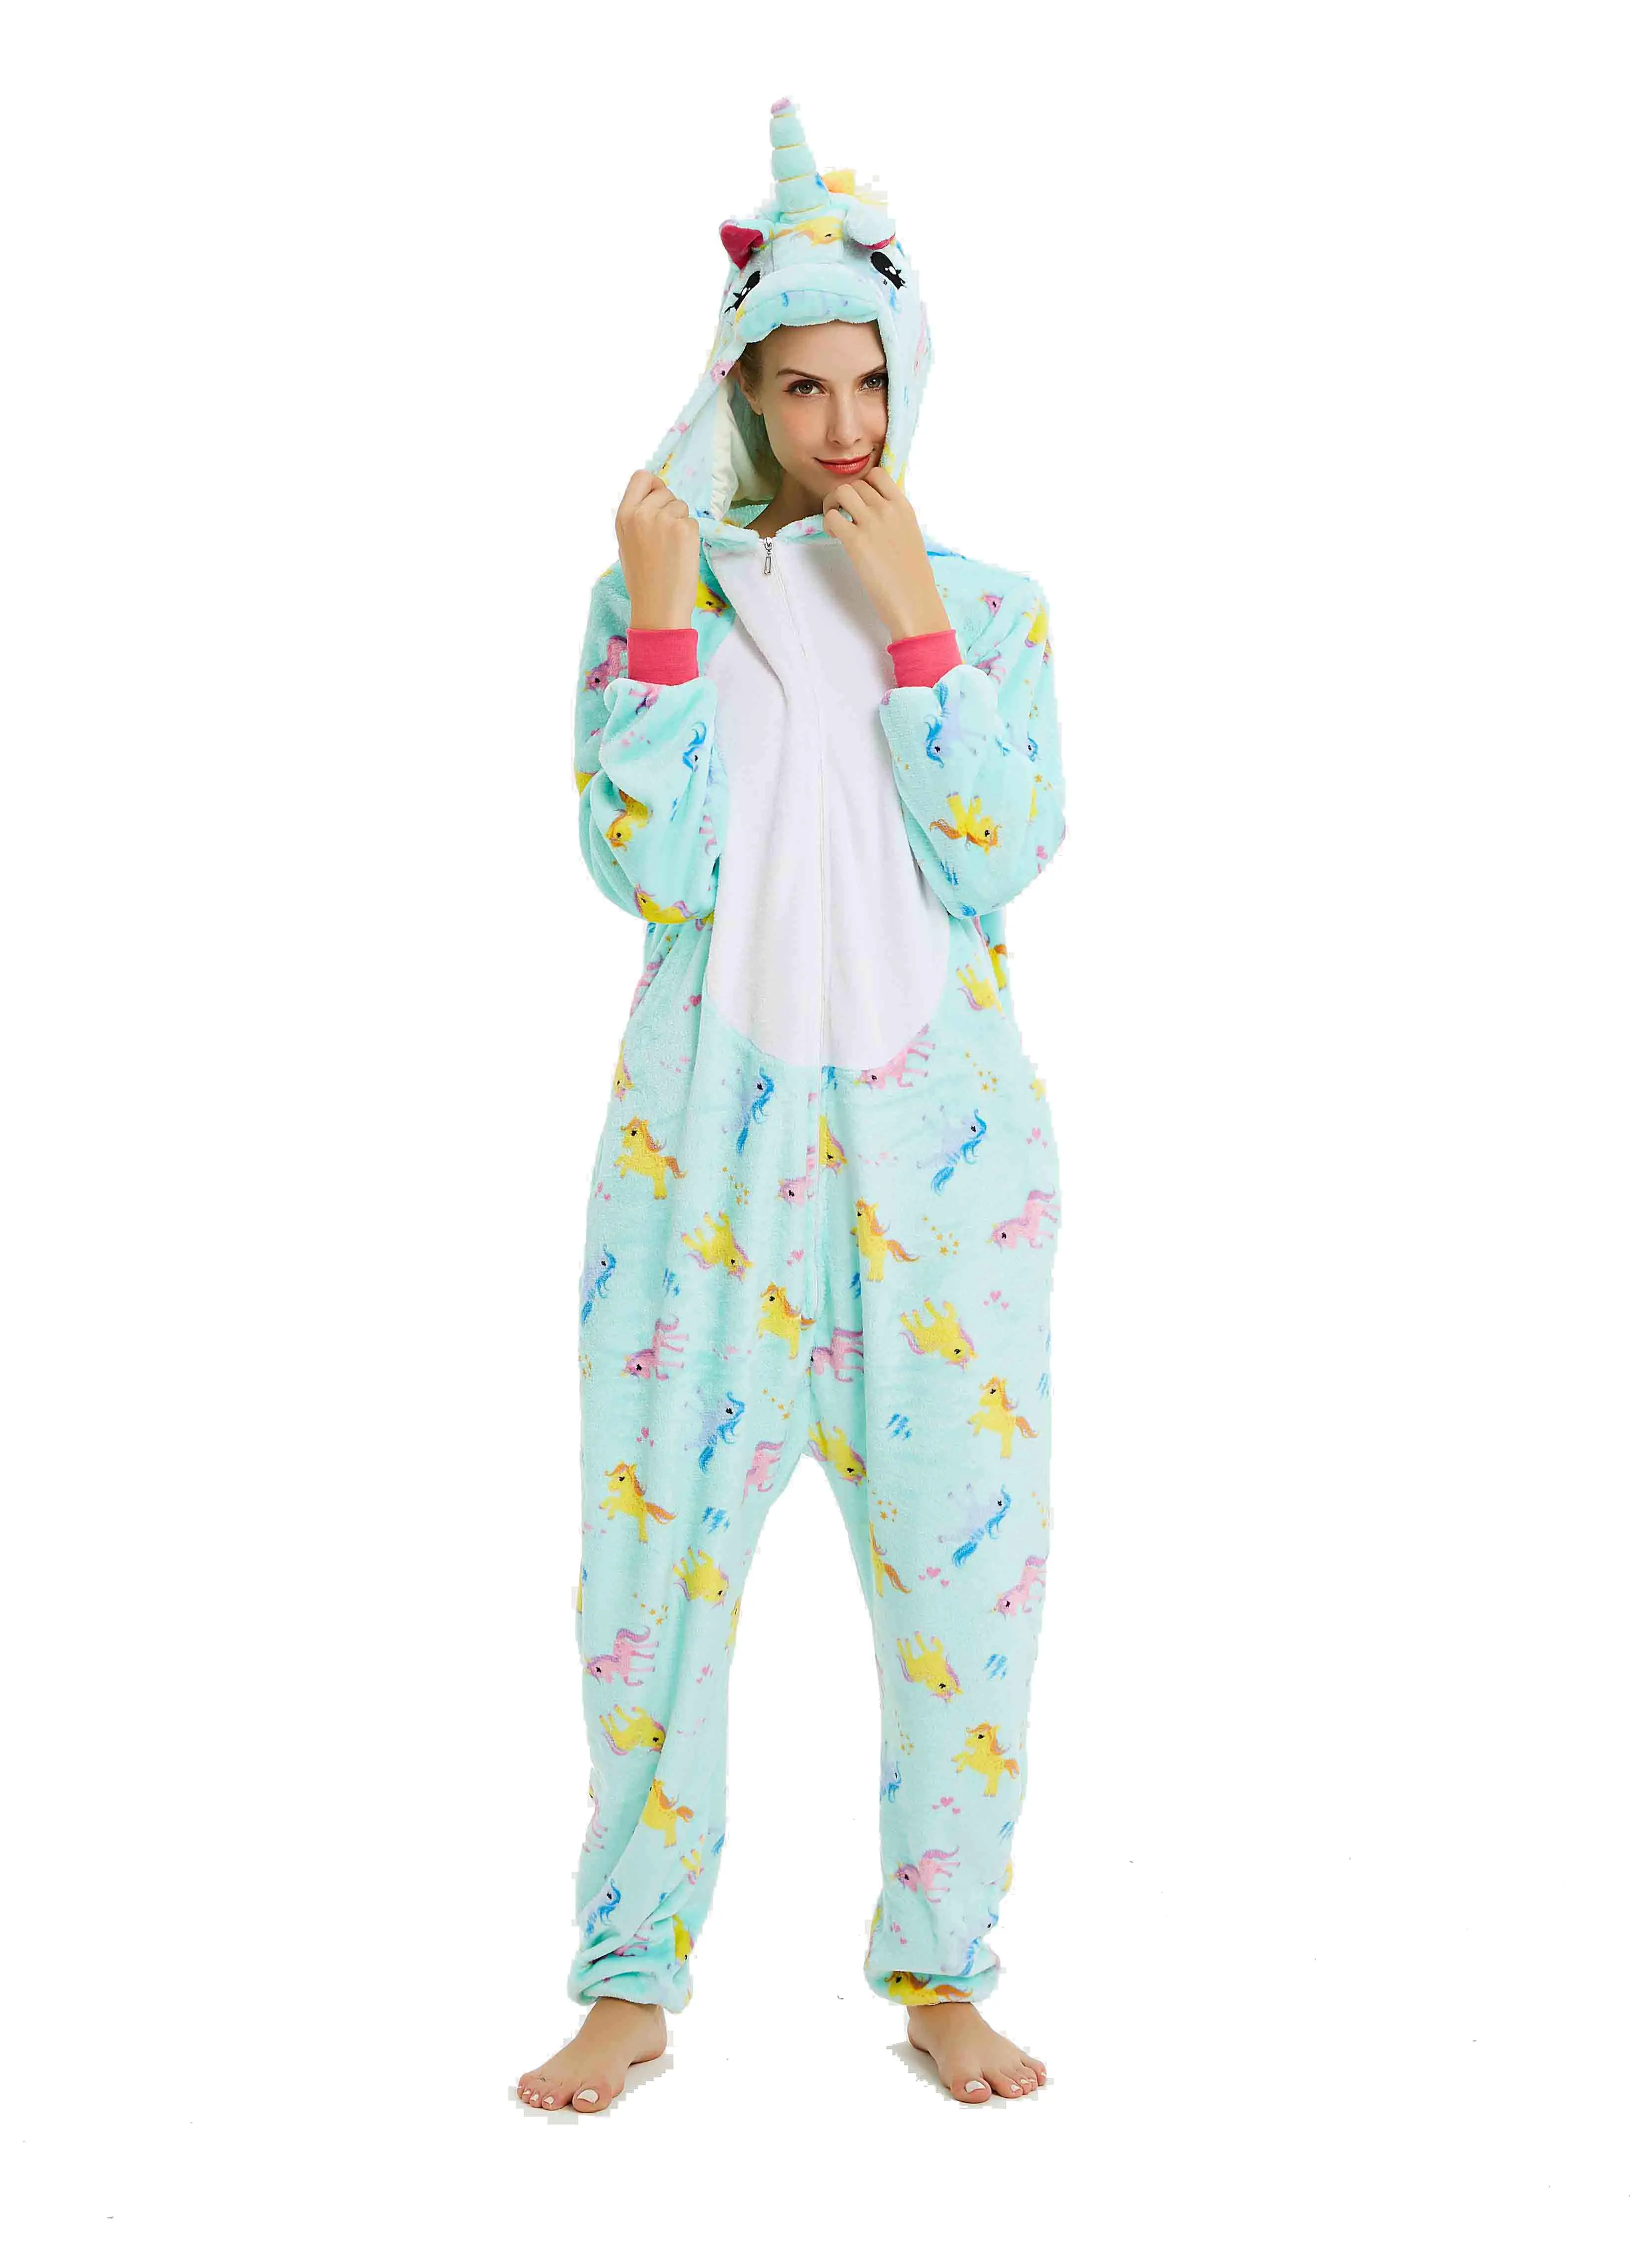 Женские пижамы с единорогом, фланелевые комплекты пижам с милыми животными, женские зимние пижамы с единорогом, пижамы, домашняя одежда - Цвет: Green unicorn